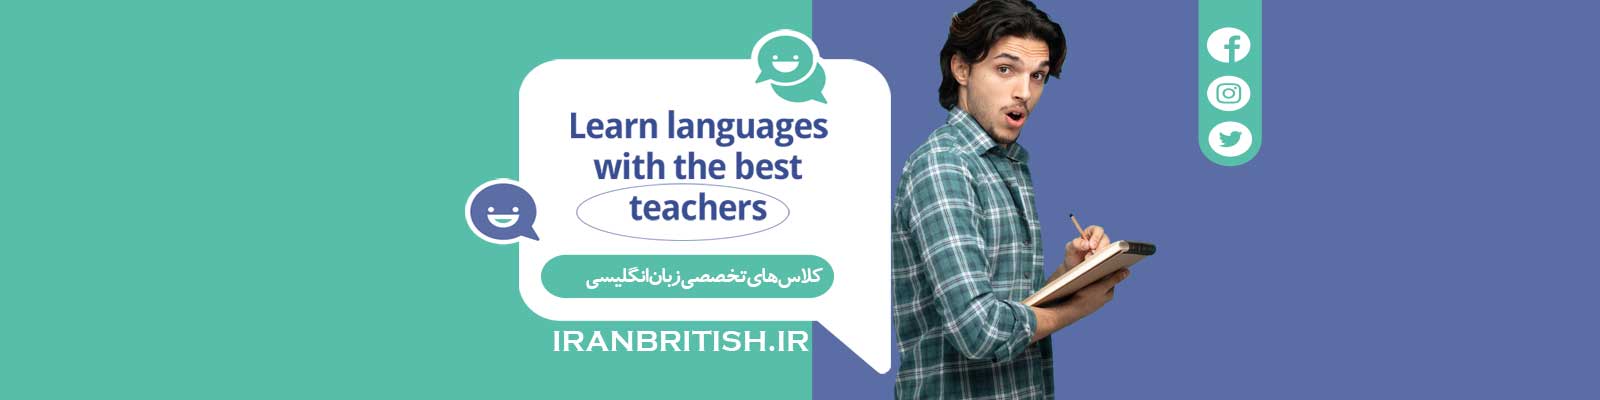 مرکز آموزش زبان انگلیسی ایران بریتانیا​